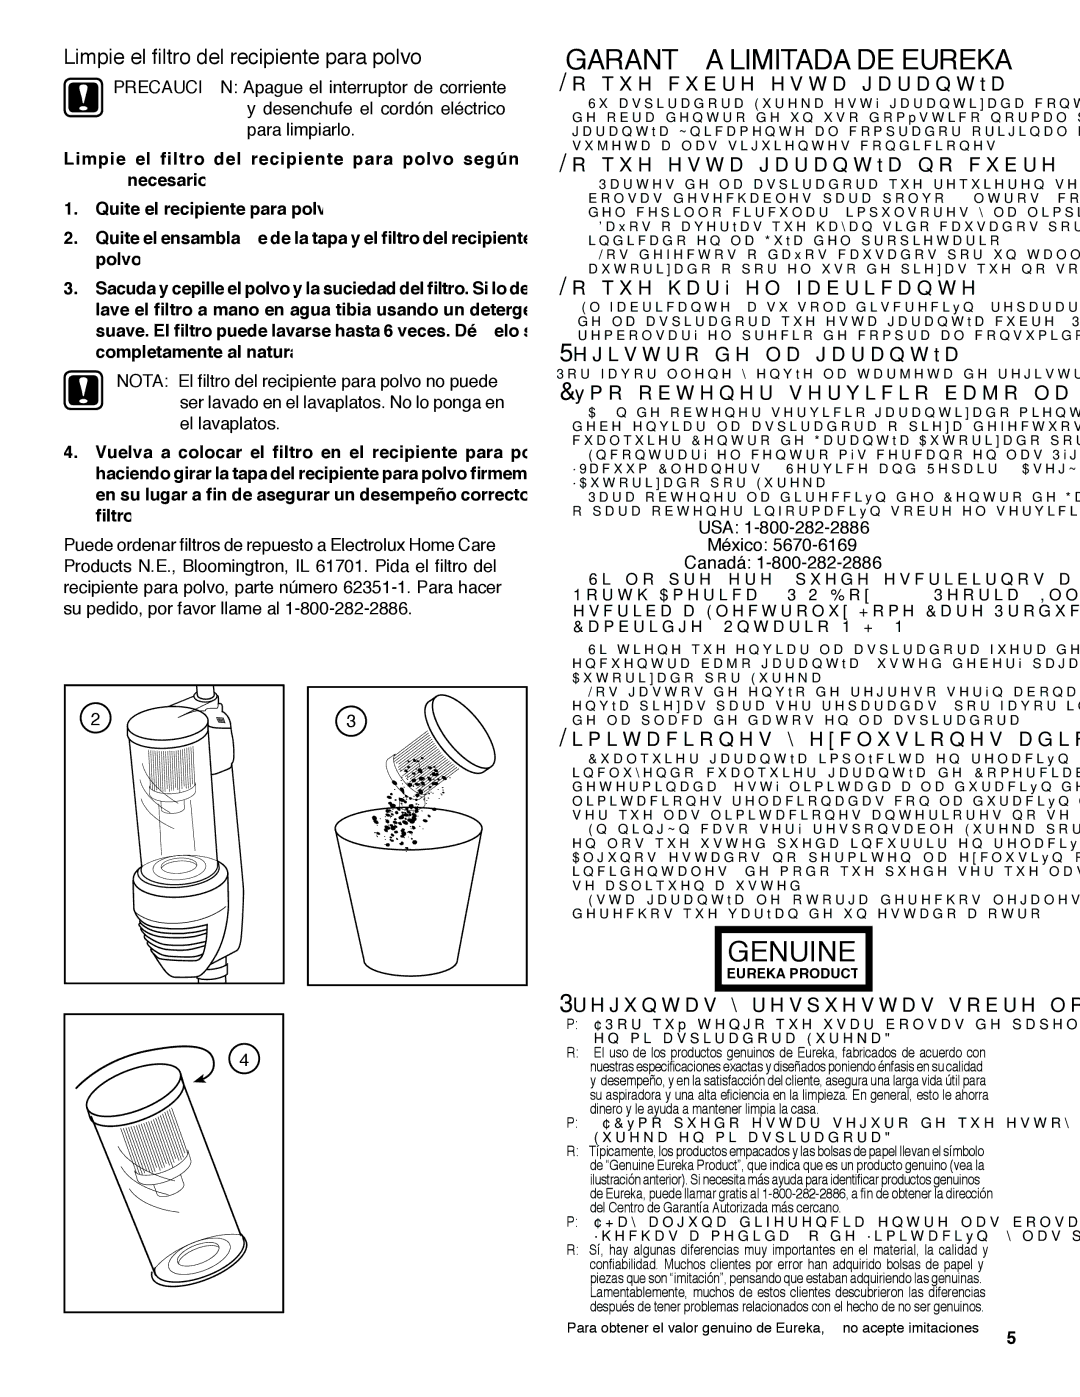 Eureka 420 warranty Garantía Limitada DE Eureka, Limpie el ﬁltro del recipiente para polvo, USA México Canadá 